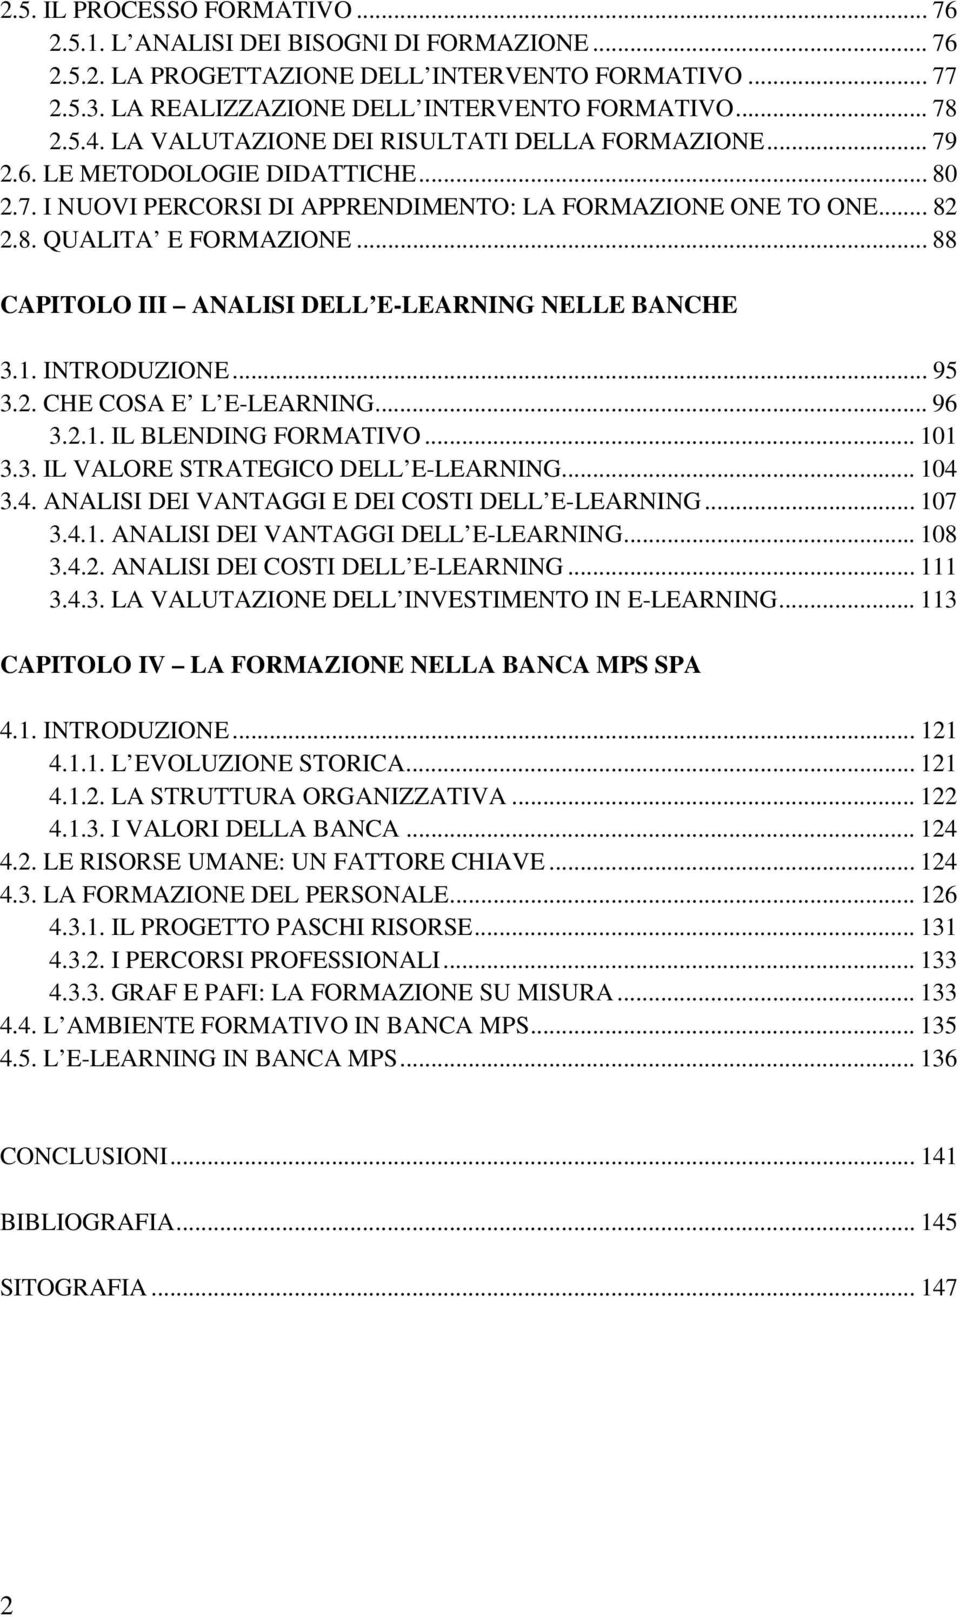 .. 88 CAPITOLO III ANALISI DELL E-LEARNING NELLE BANCHE 3.1. INTRODUZIONE... 95 3.2. CHE COSA E L E-LEARNING... 96 3.2.1. IL BLENDING FORMATIVO... 101 3.3. IL VALORE STRATEGICO DELL E-LEARNING... 104 3.